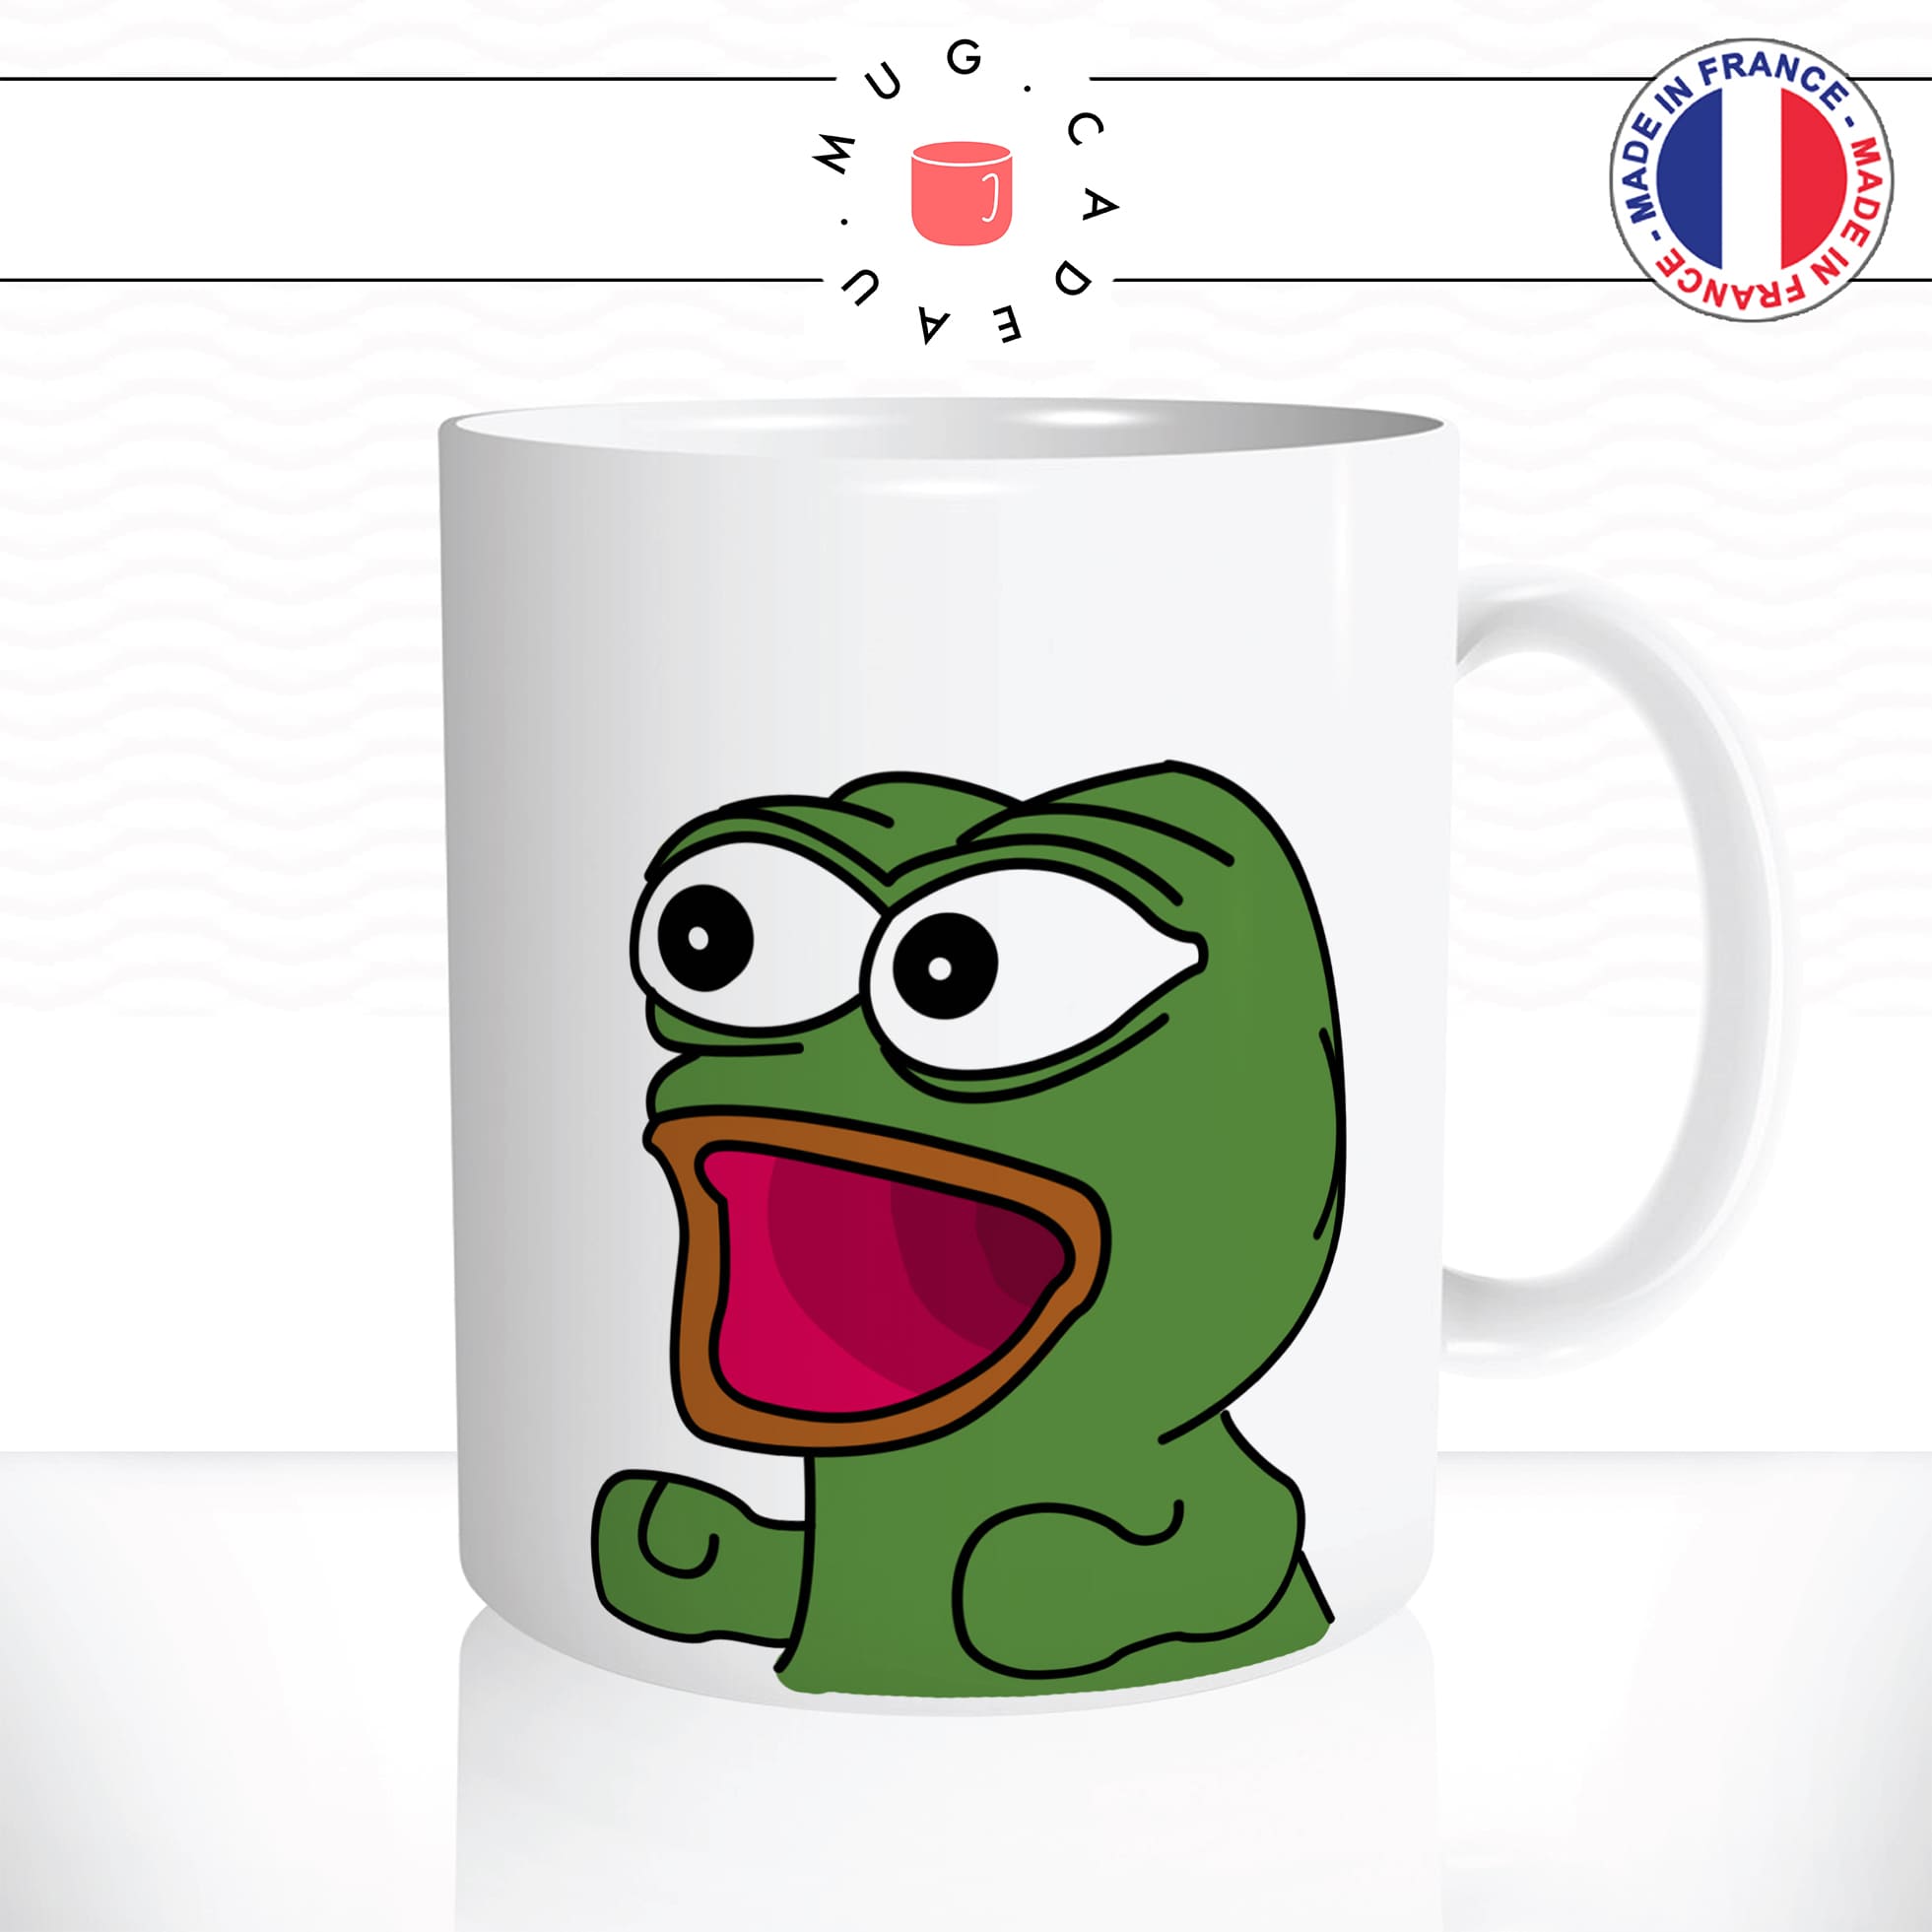 mug-tasse-meme-pepe-the-frog-content-bébé-petit-drole-geek-humour-fun-café-thé-idée-cadeau-originale-personnalisée2